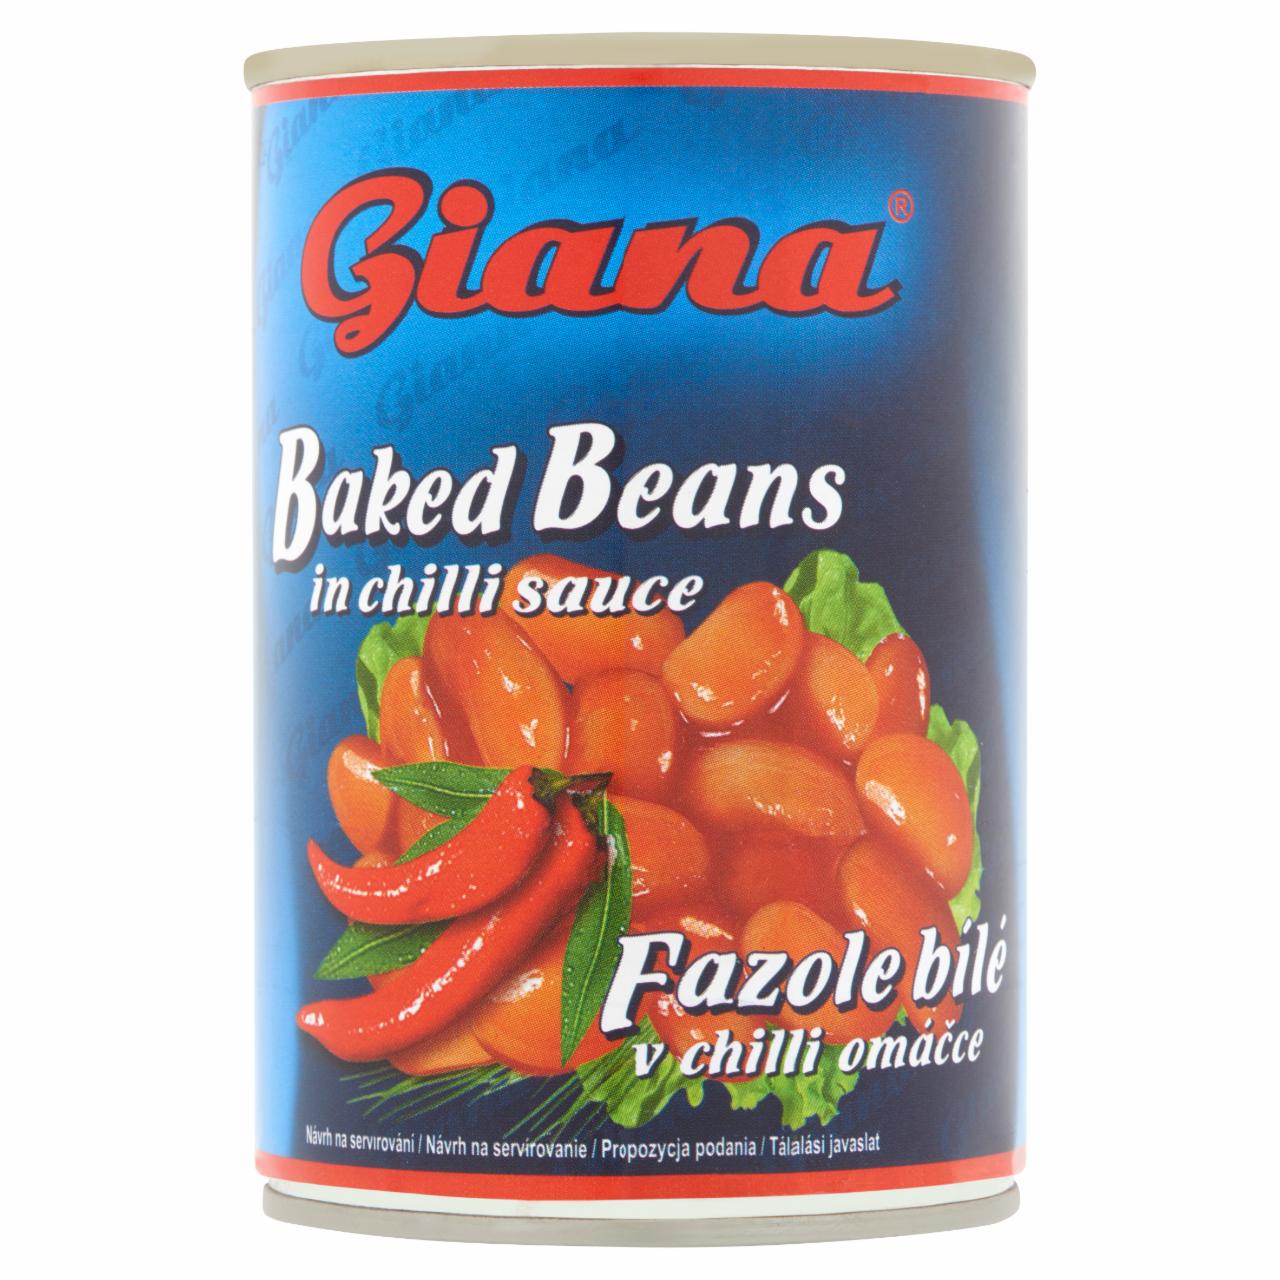 Képek - Giana fehérbab chilis szószban 410 g